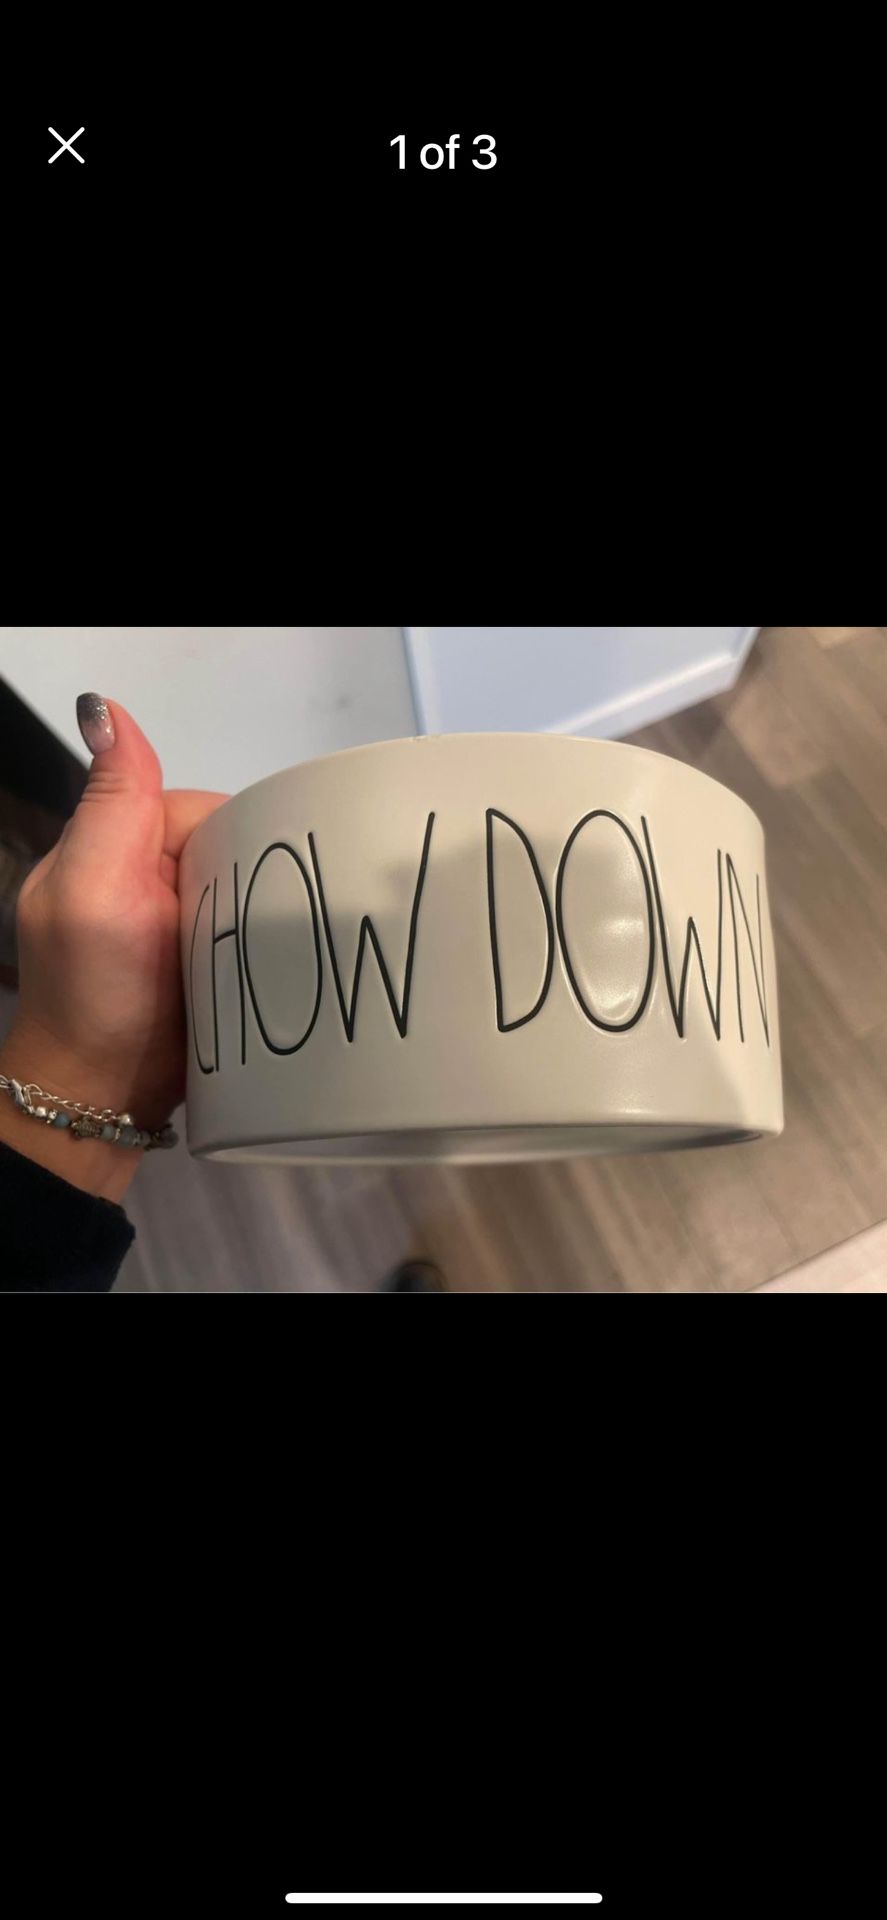 8 inch Rae Dunn “Chow Down” ceramic dog bowl. 